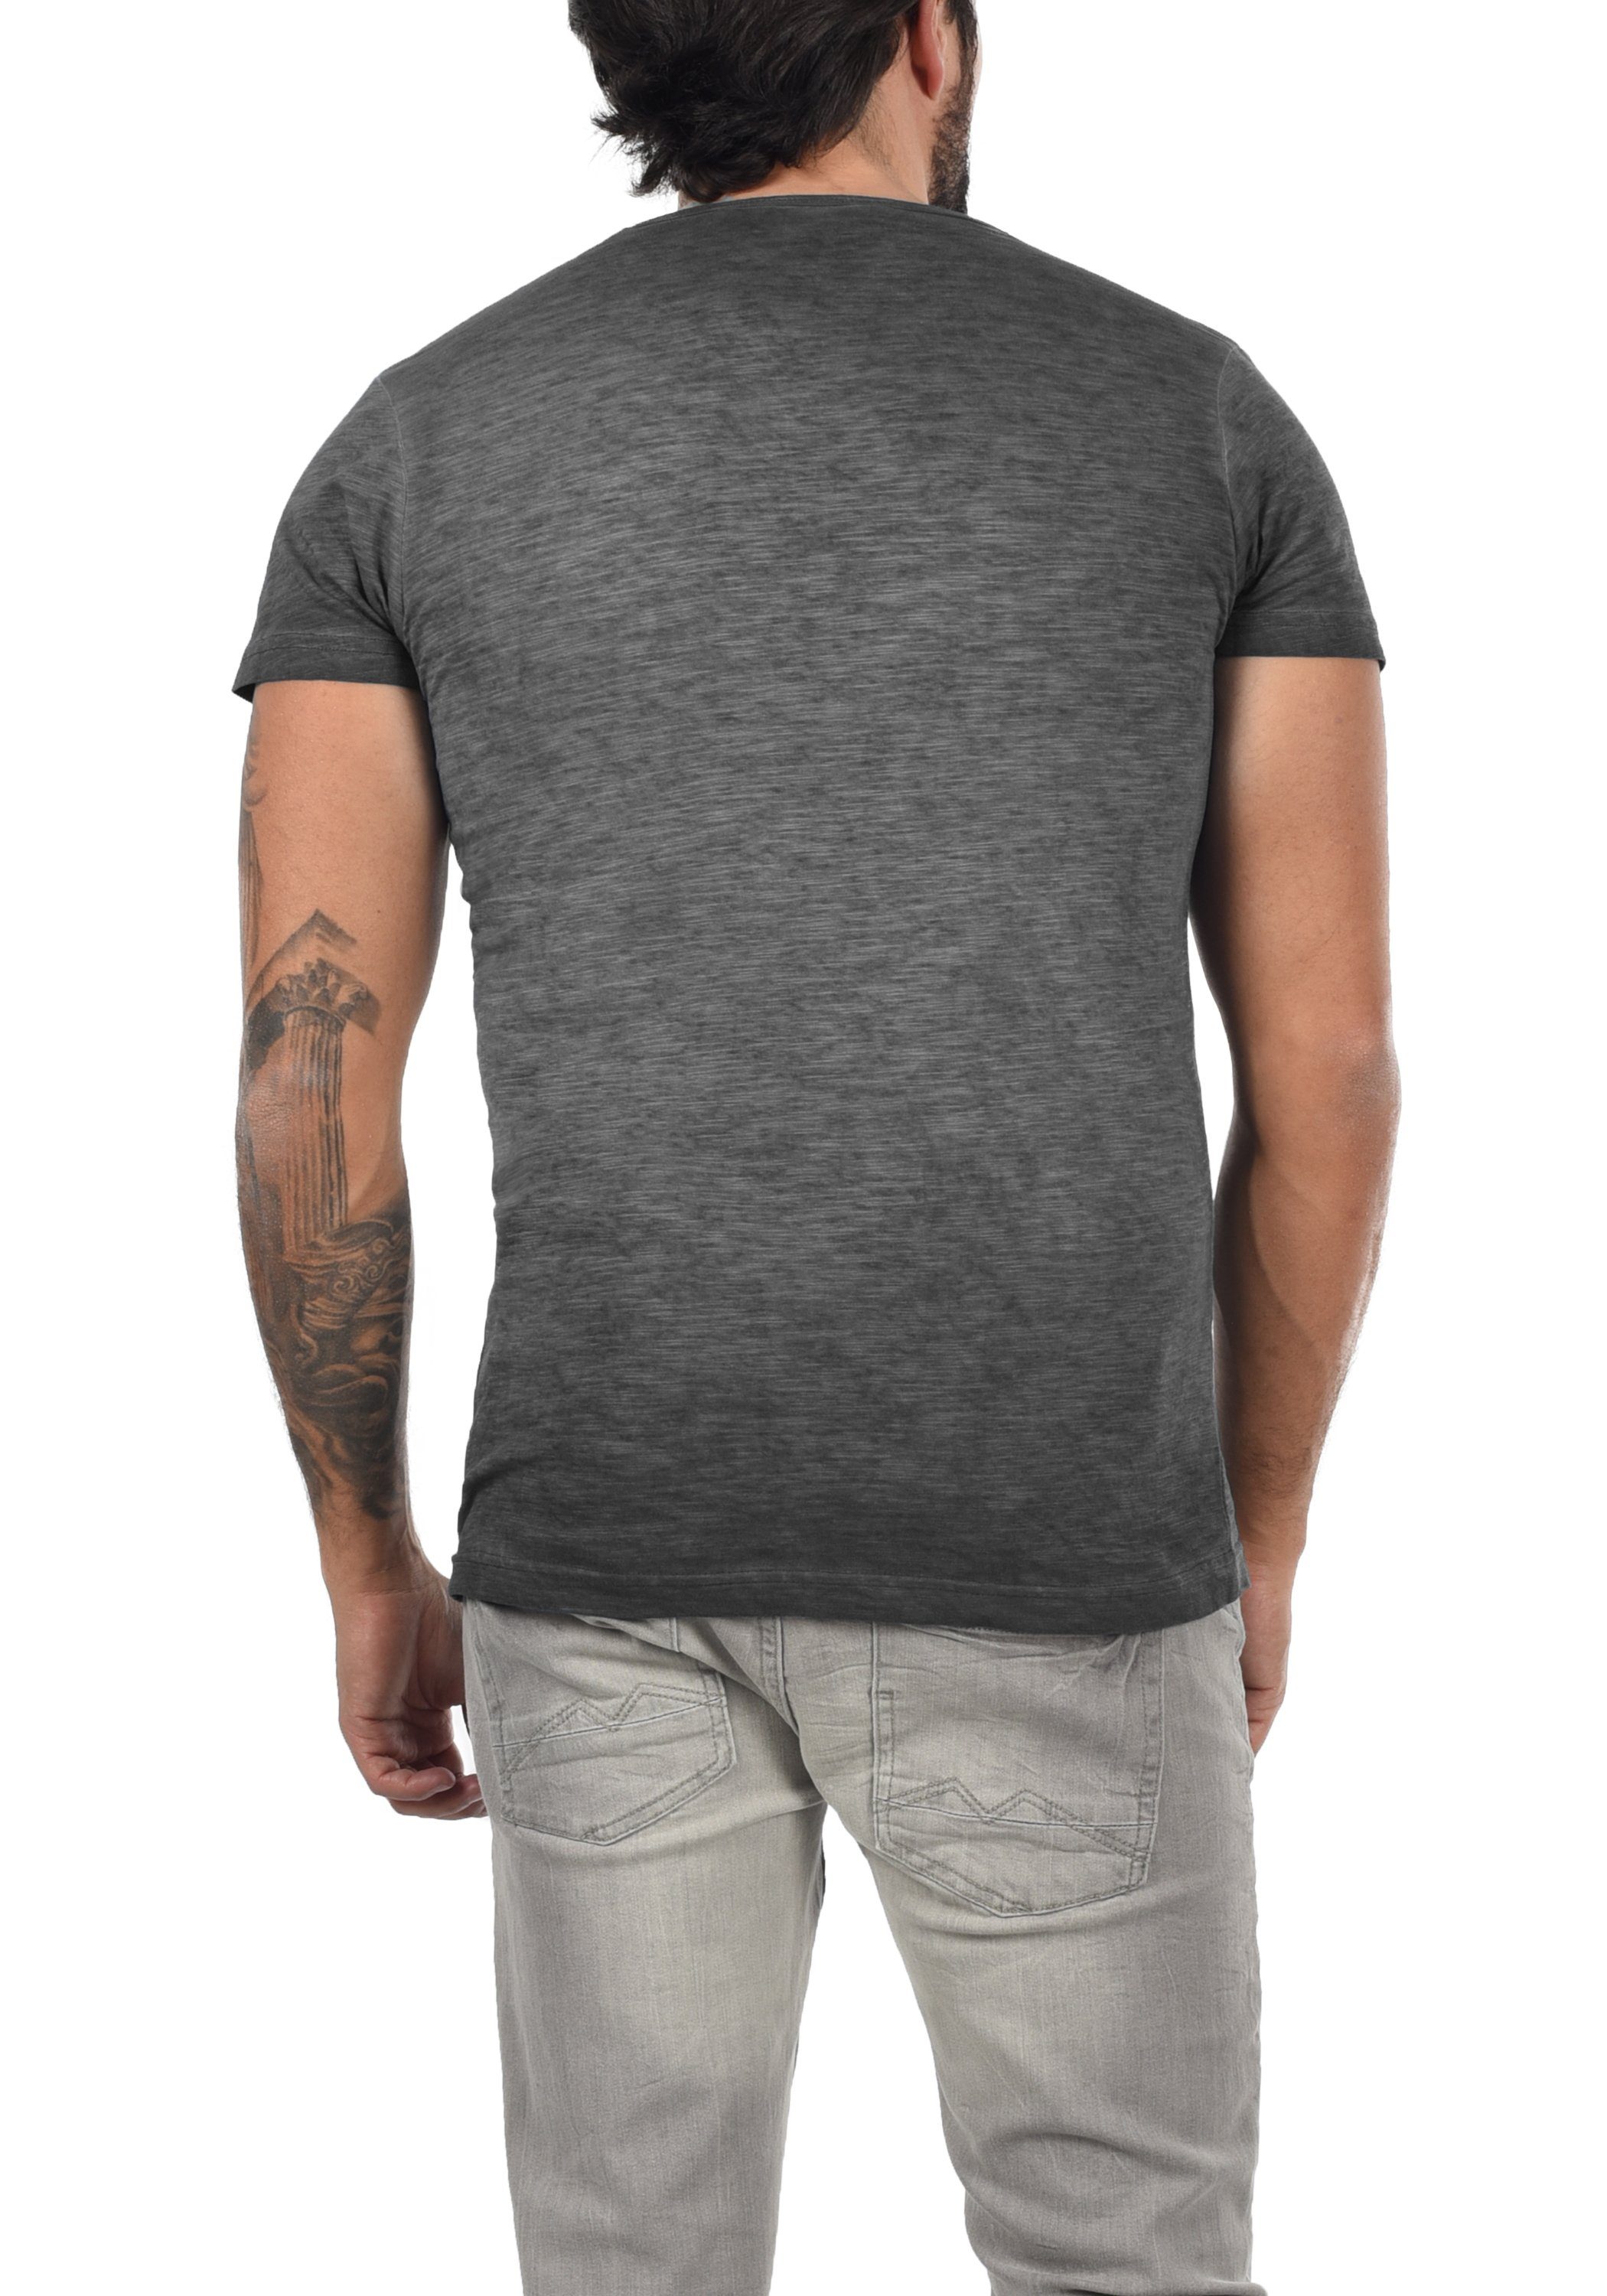 mit (9000) T-Shirt V-Ausschnitt T-Shirt SDConley Black !Solid